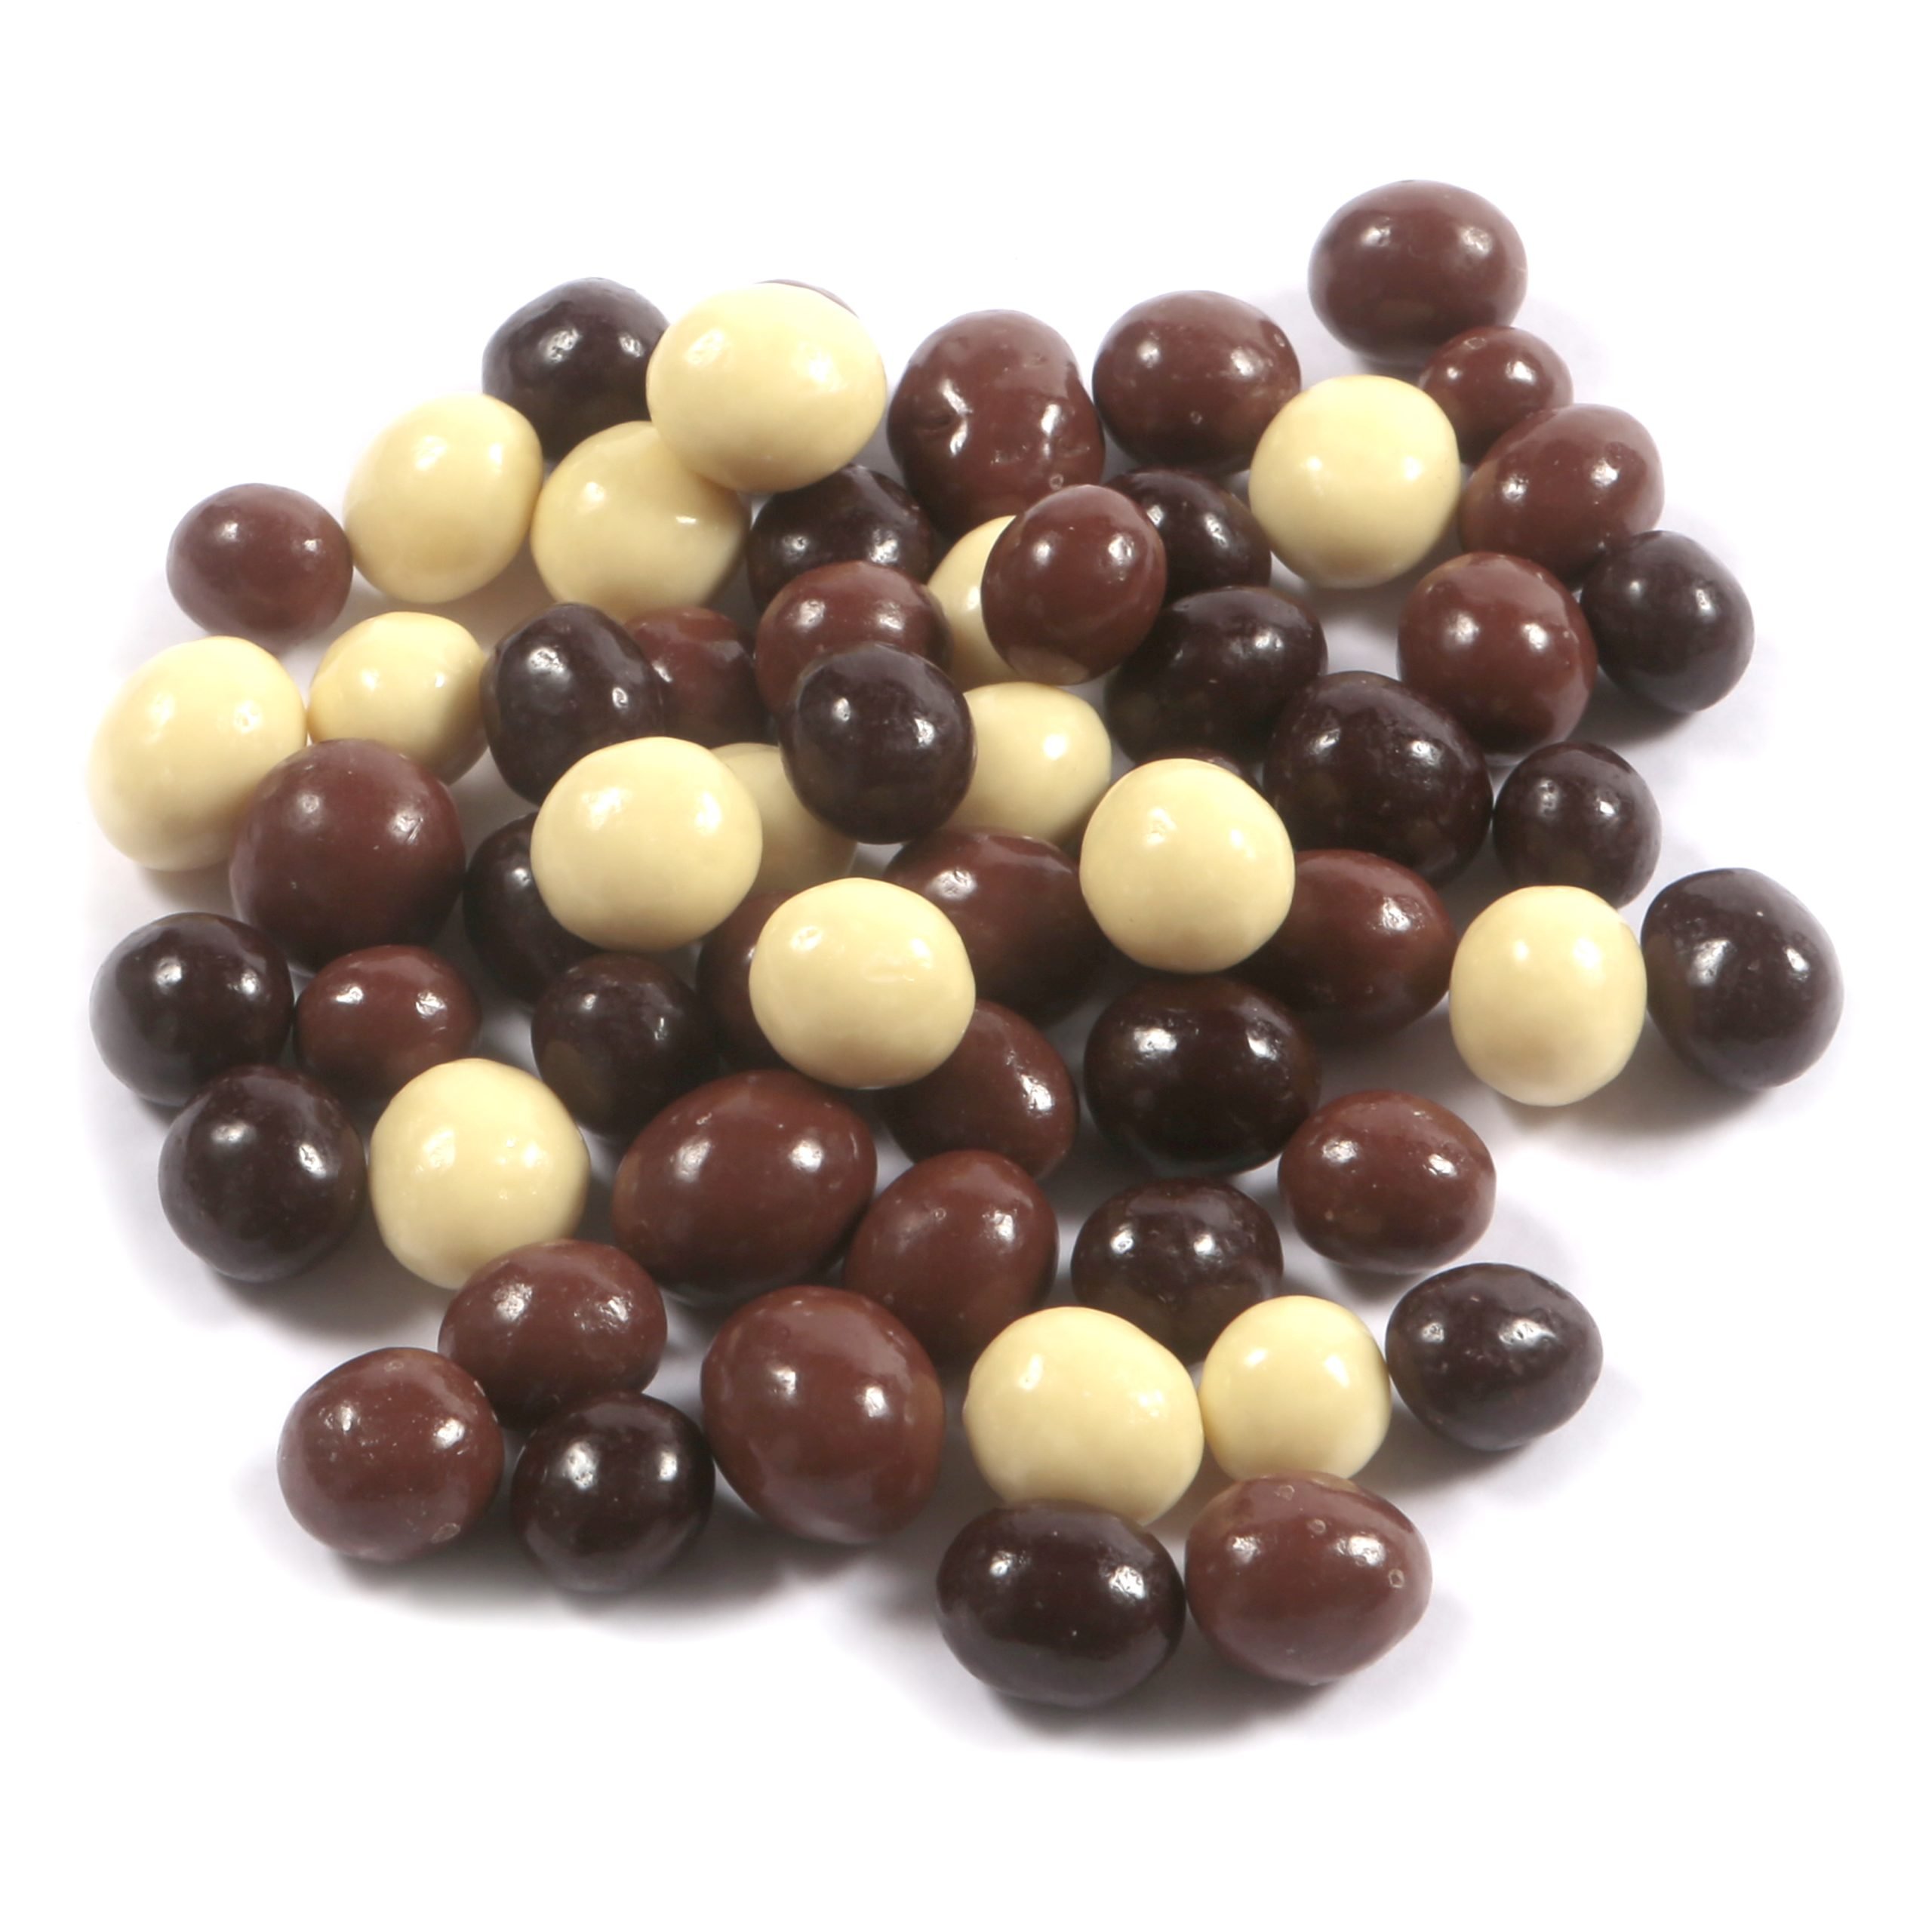 Dorri - Assorted Milk, Dark and White Chocolate Coffee Beans